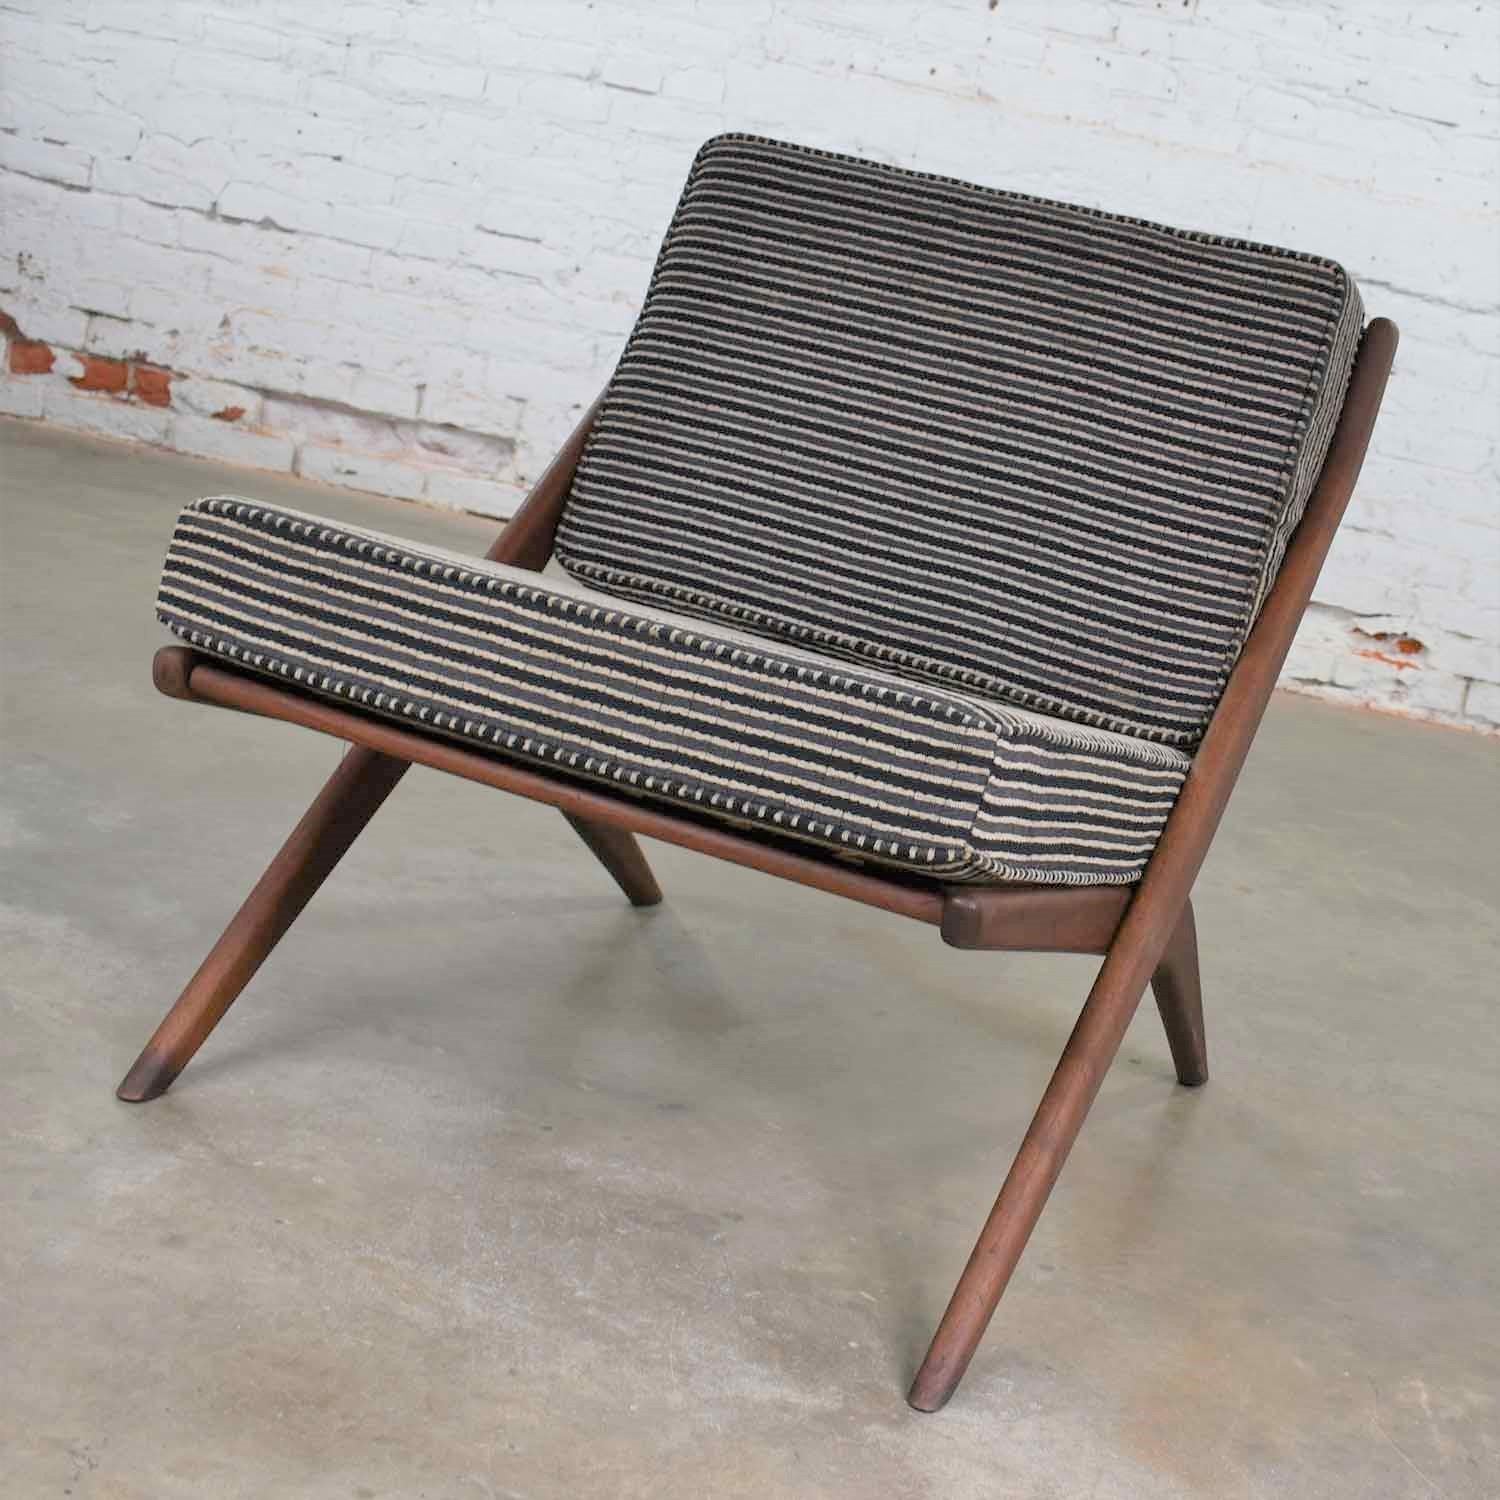 Schöner und ikonischer Scandinavian Modern Scissor Lounge Chair, entworfen von Folke Ohlsson für DUX. Es ist in einem wunderbaren Vintage-Zustand. Der Holzrahmen wurde restauriert, kann aber noch kleine Altersspuren aufweisen. Wir mussten einige